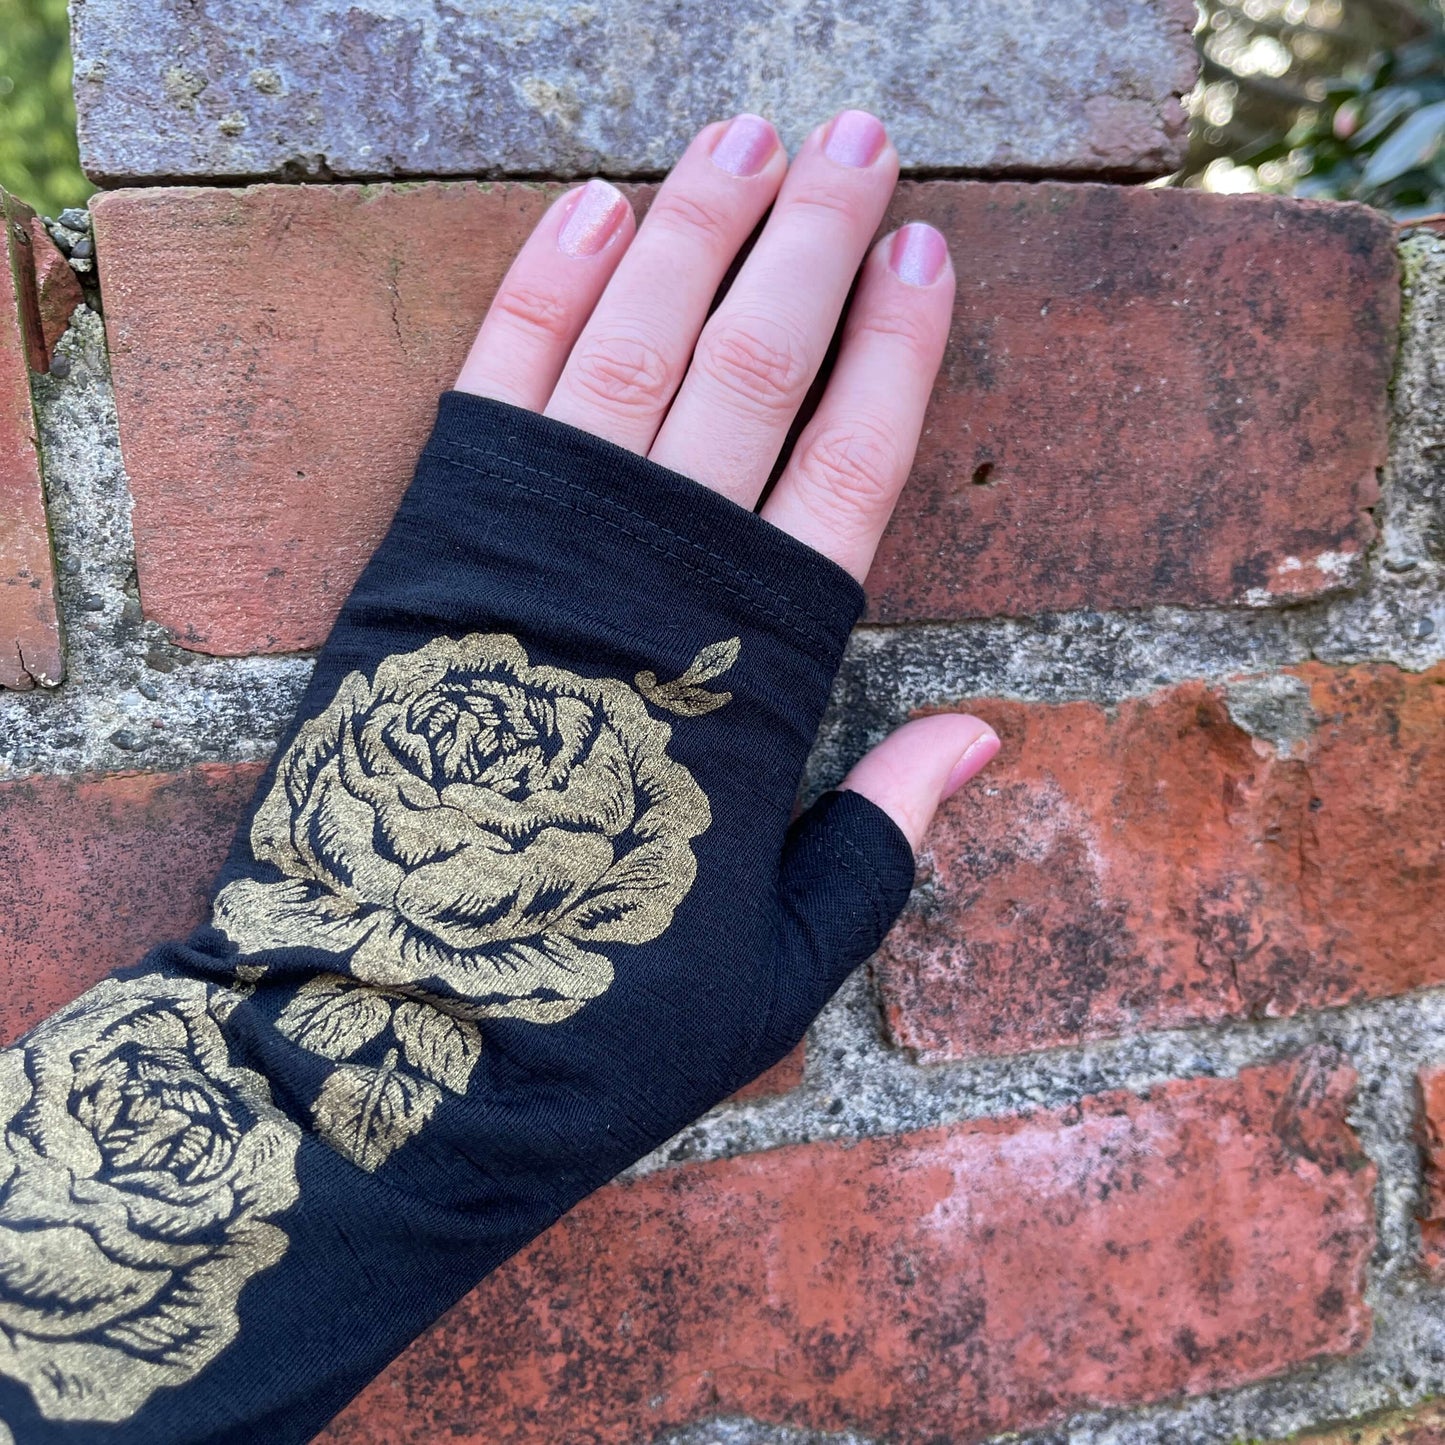 Fingerless merino gloves in black with gold roses.